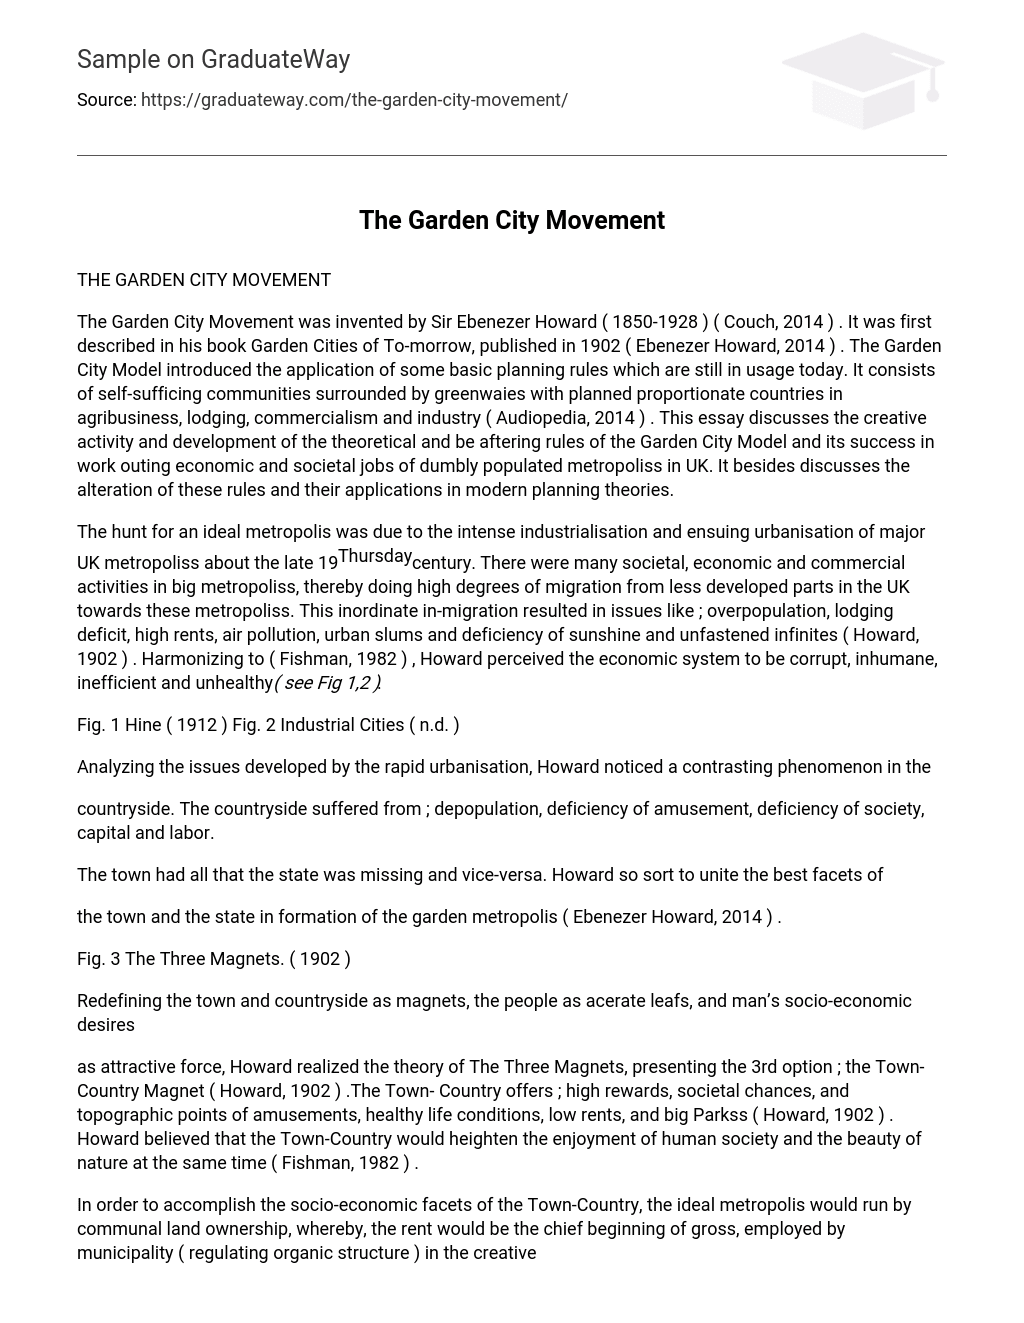 The Garden City Movement